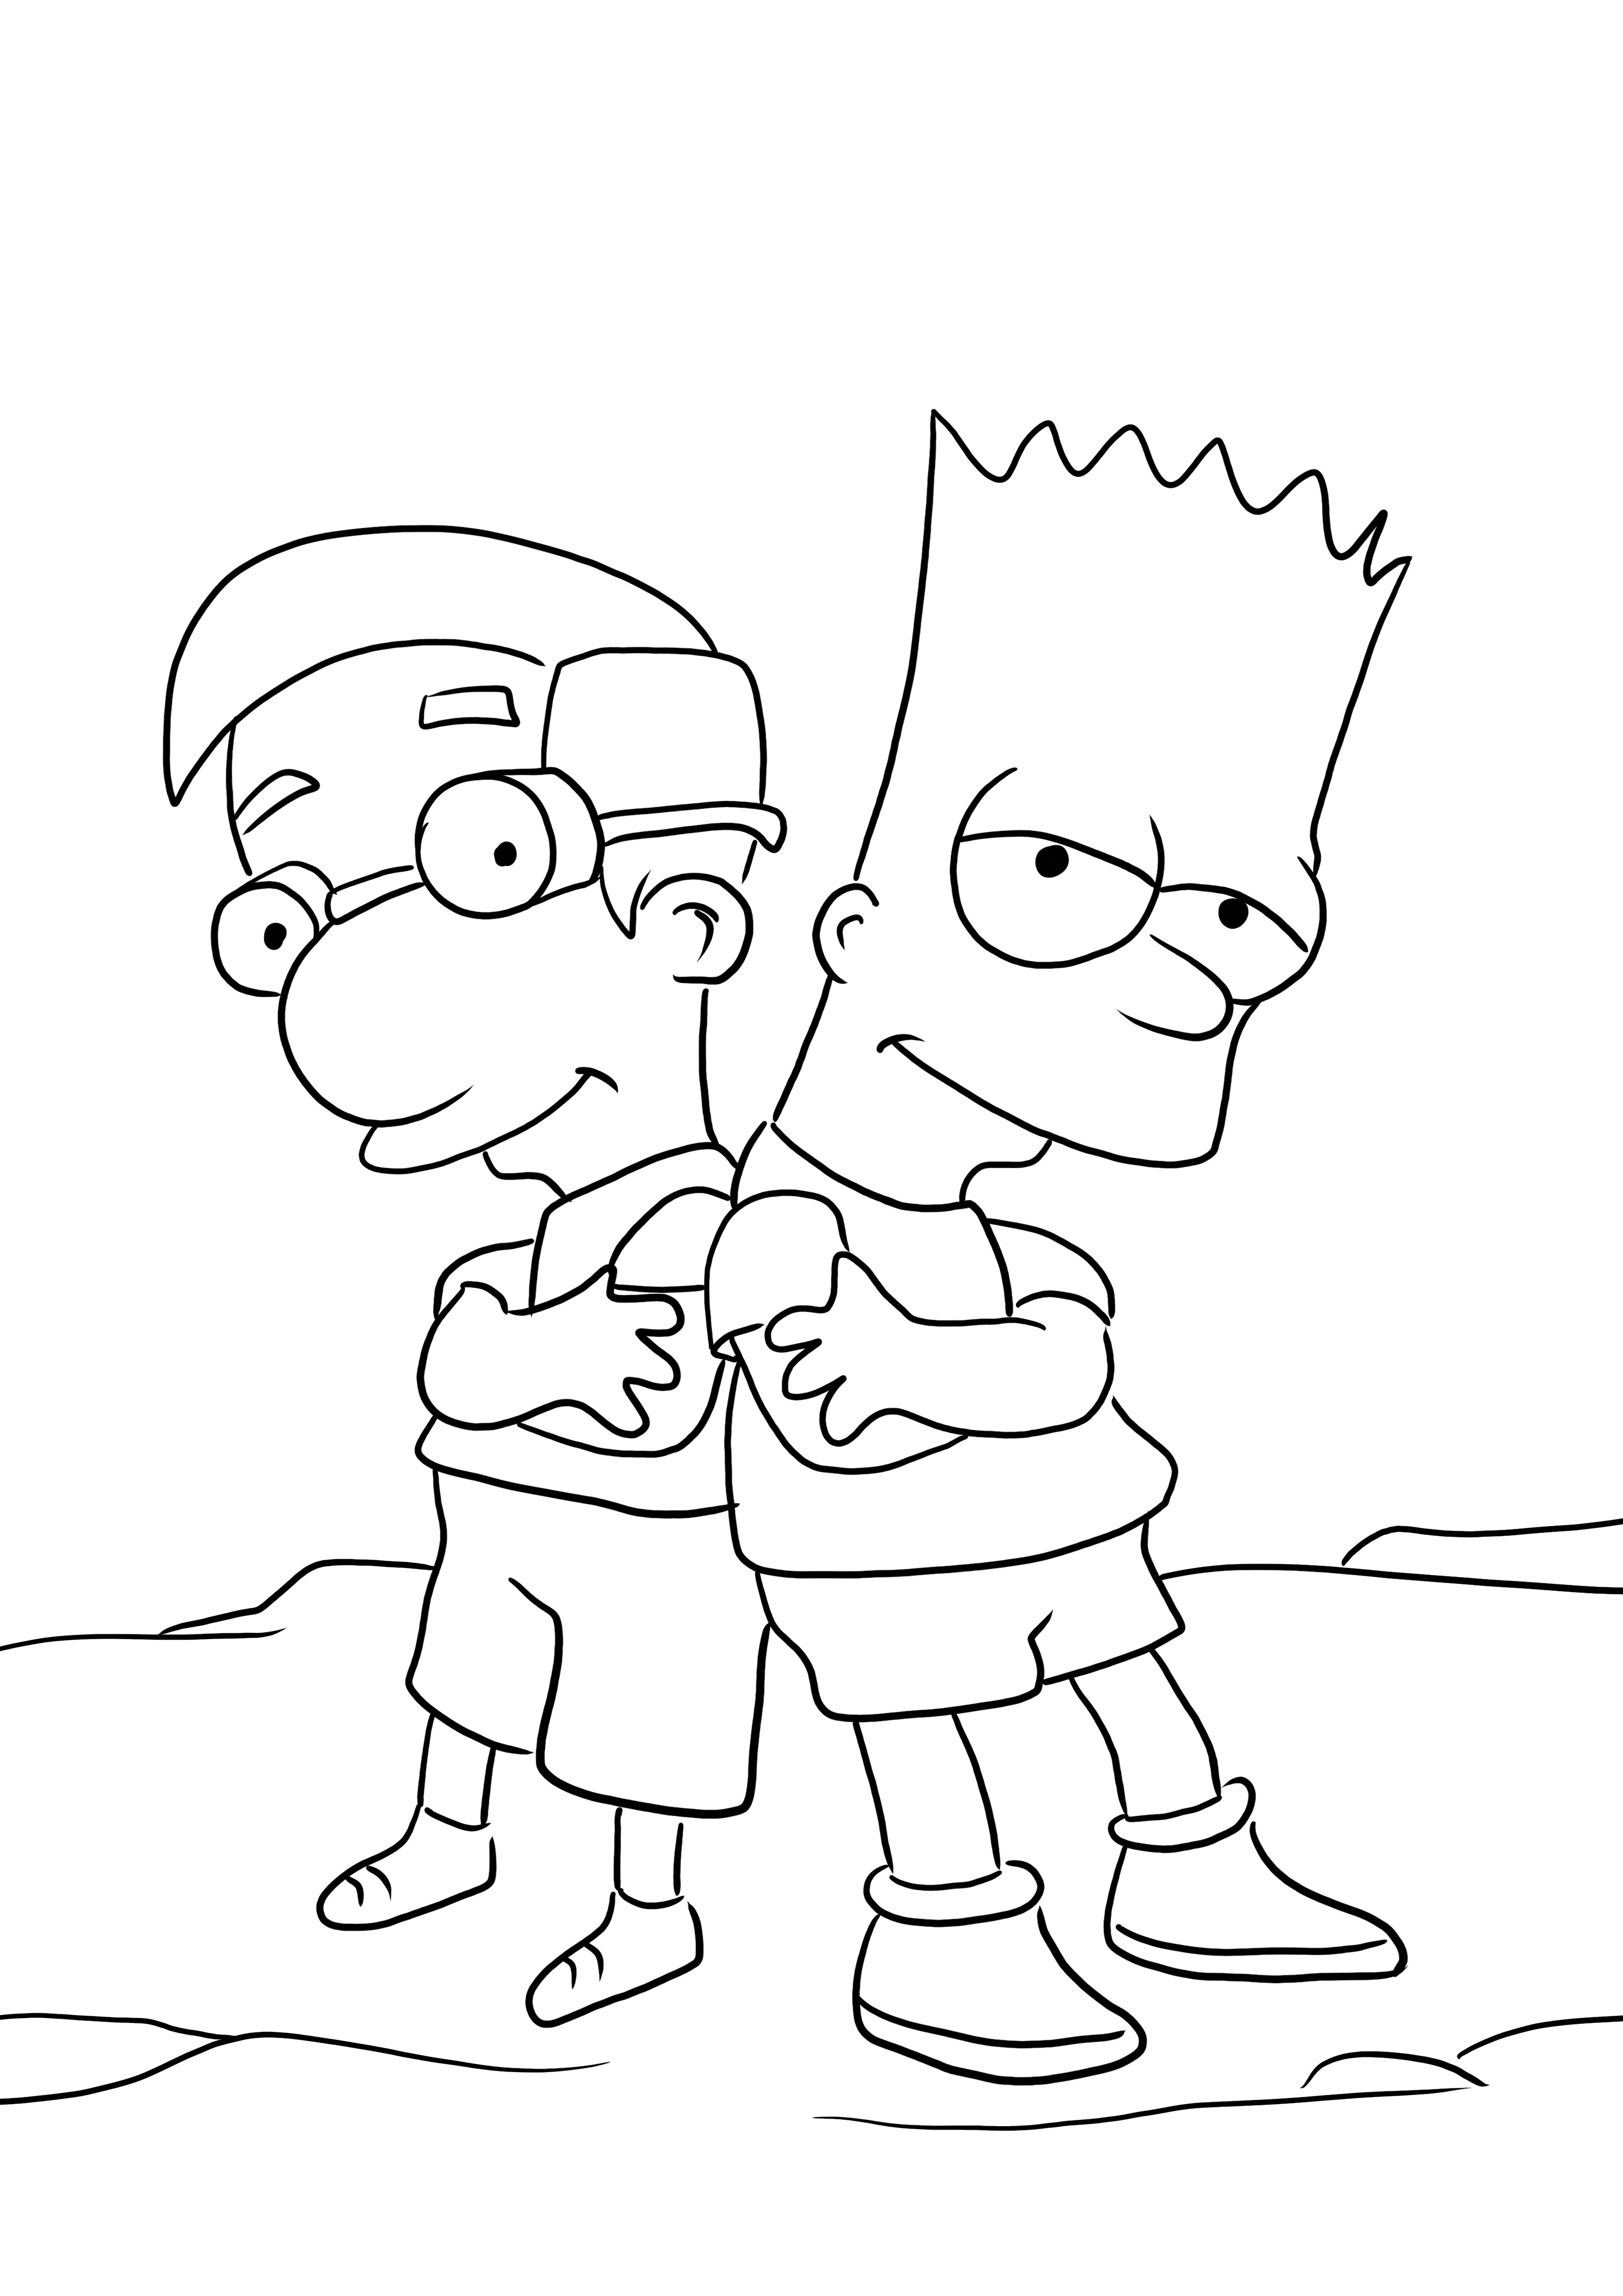 Bart e Millhouse per colorare e scaricare gratuitamente l'immagine